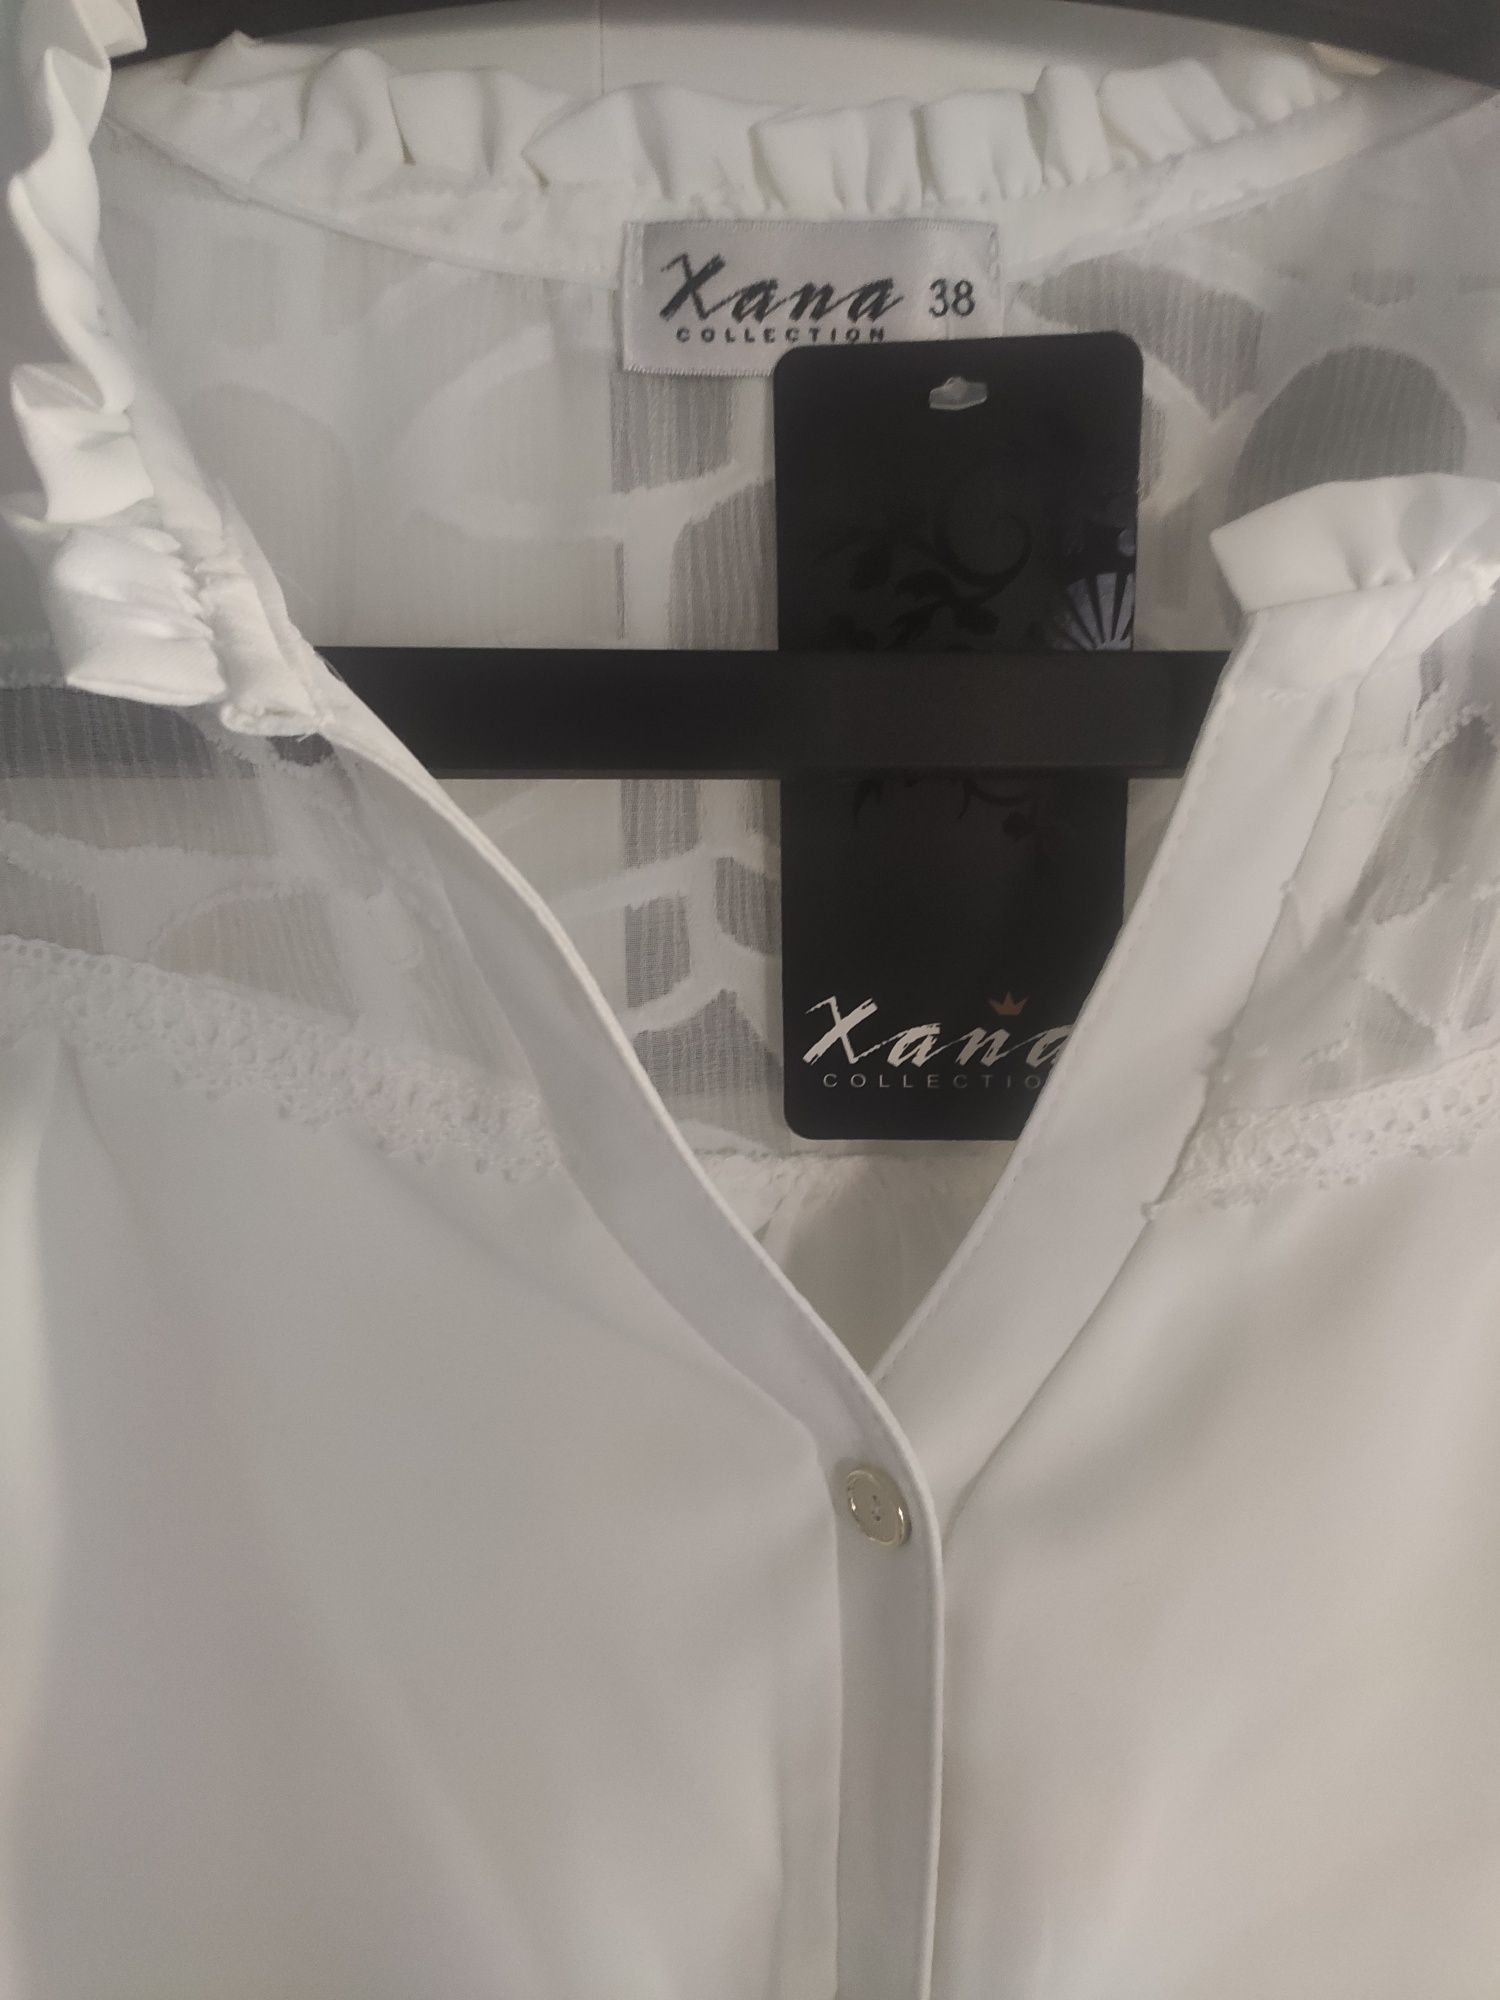 Koszula rozmiar M / 38 firmy Xana